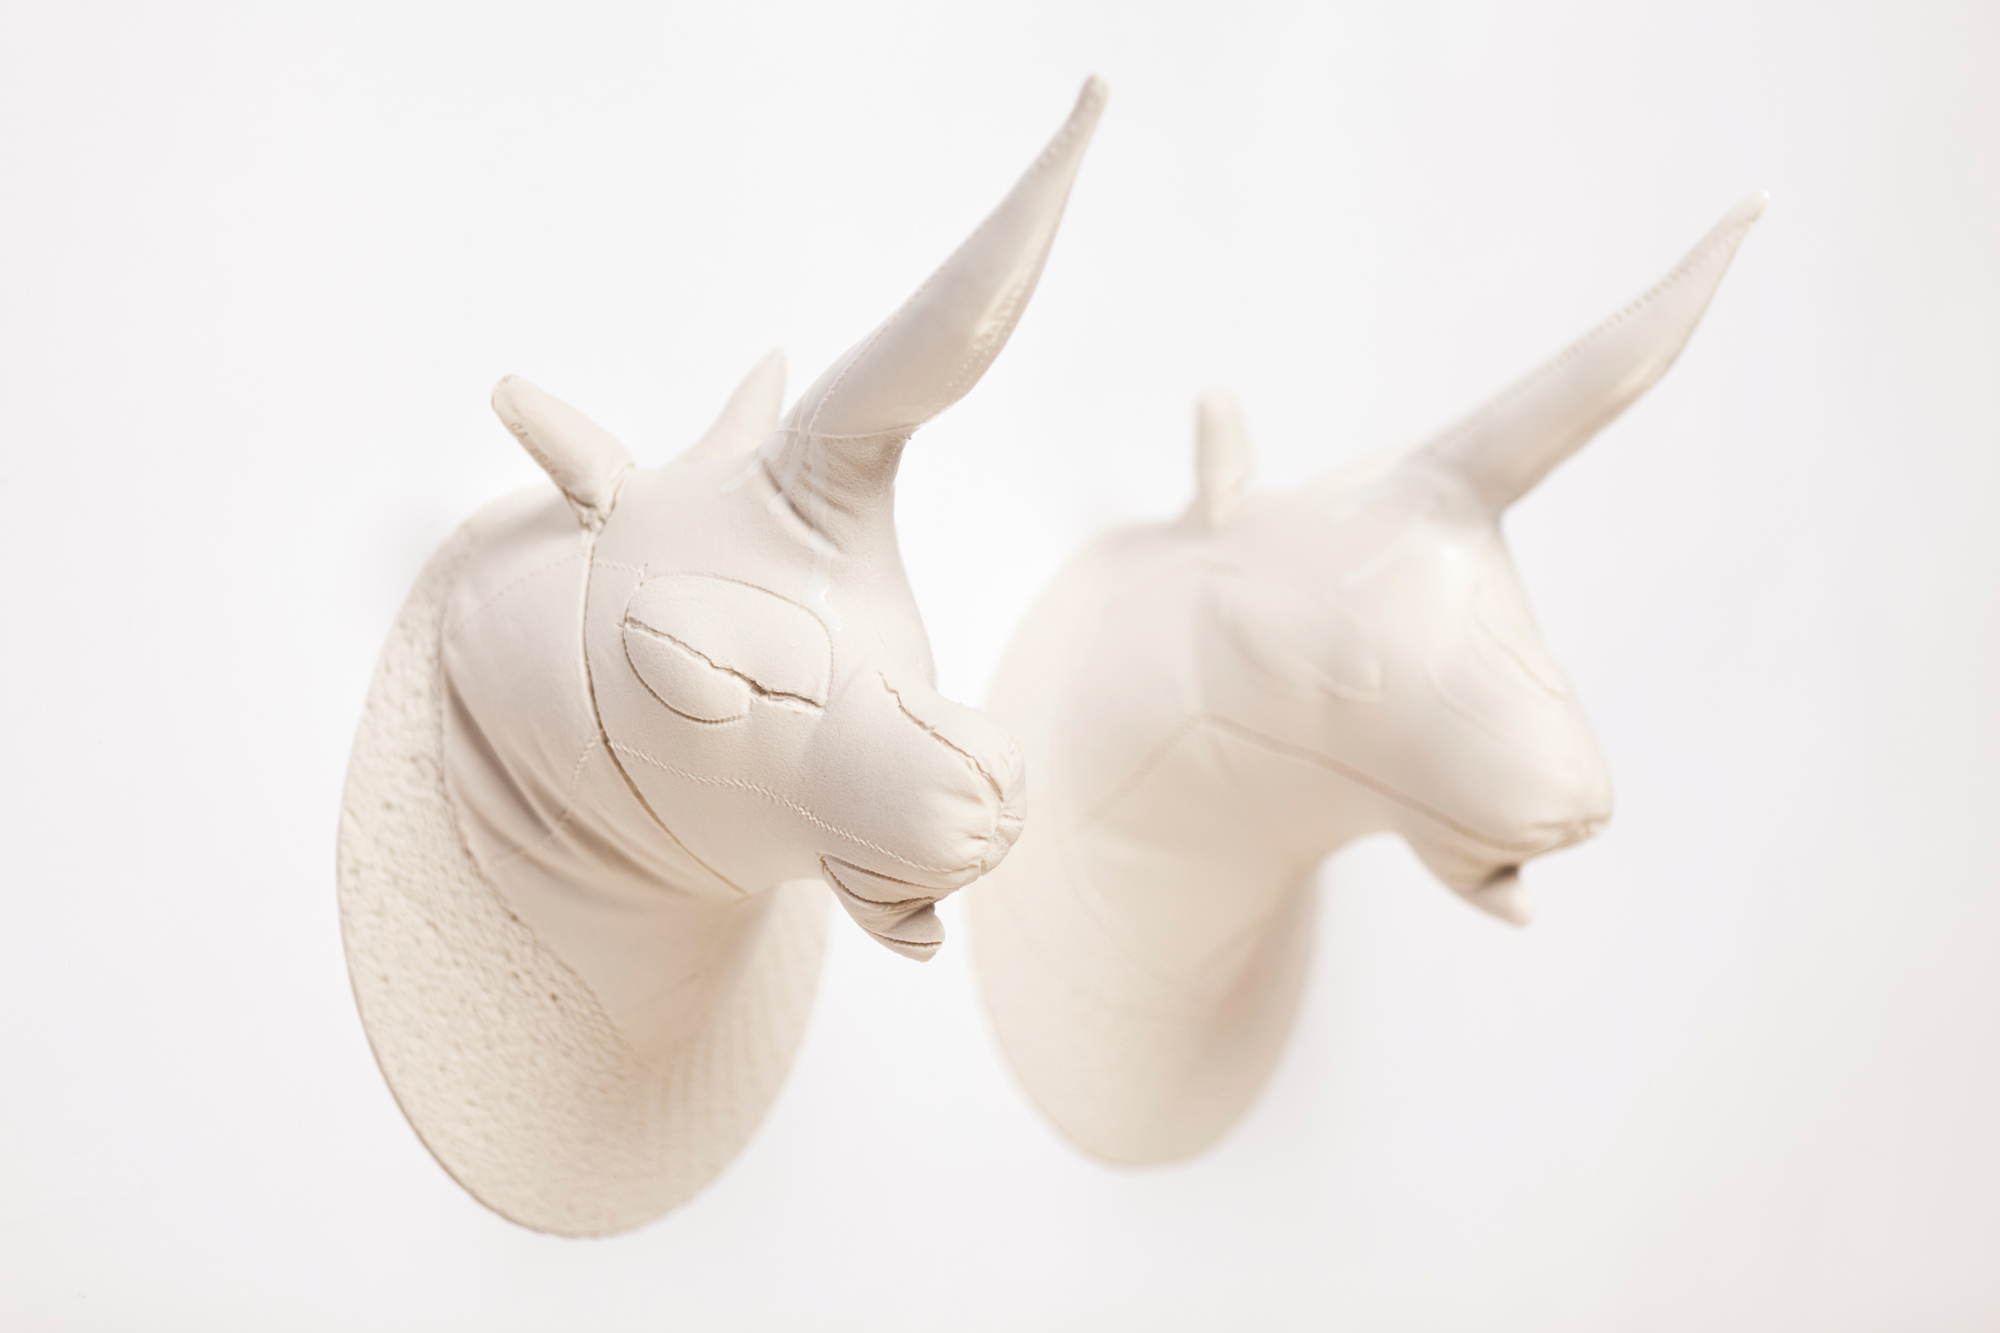 SKIN GAME, Licornes - Porcelaine coulée dans une paire de gants en cuir, émail - 27 x 25 x 16 cm chacune - 2014 - Photo : David Marlé